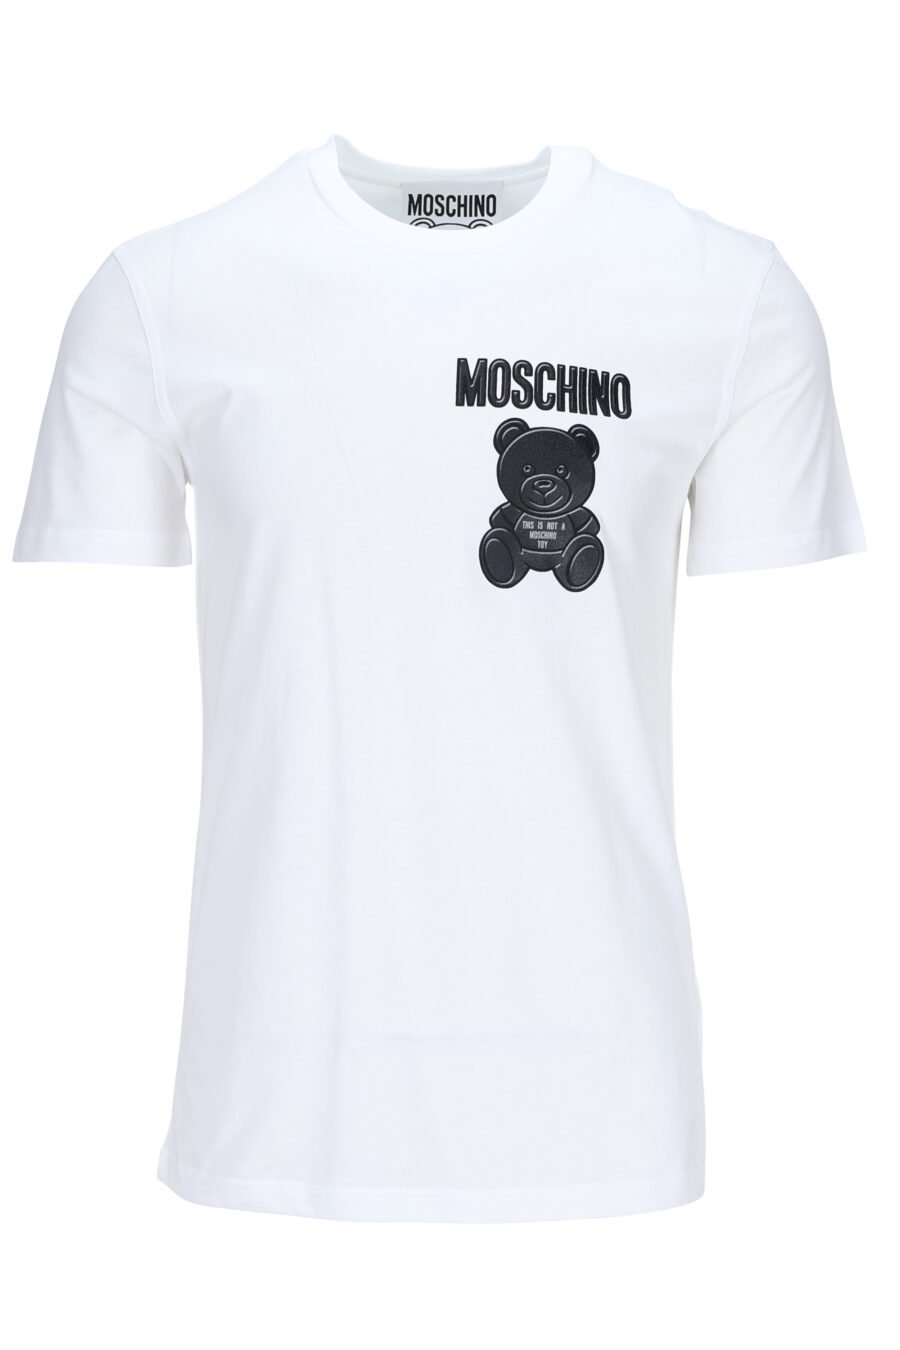 Weißes T-Shirt aus Öko-Baumwolle mit schwarzem Mini-Logo "teddy" - 889316853131